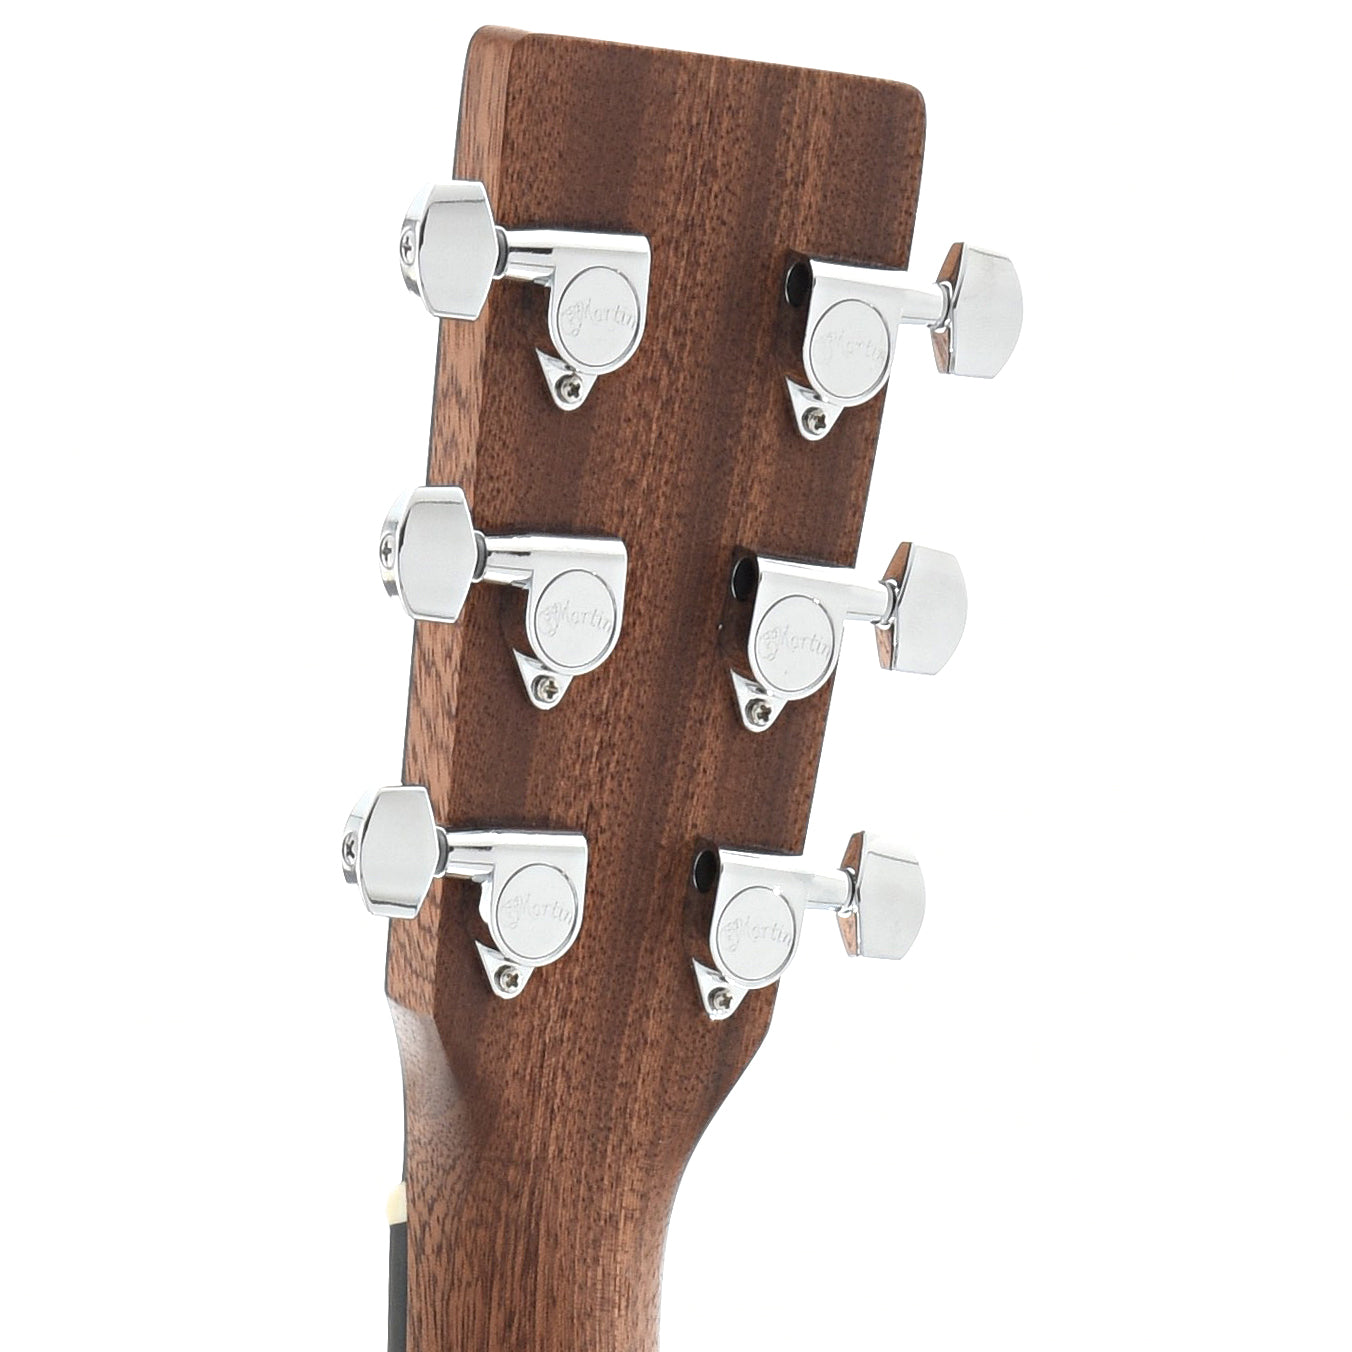 Martin 000-10E Sapele Guitar & Gigbag (2021)